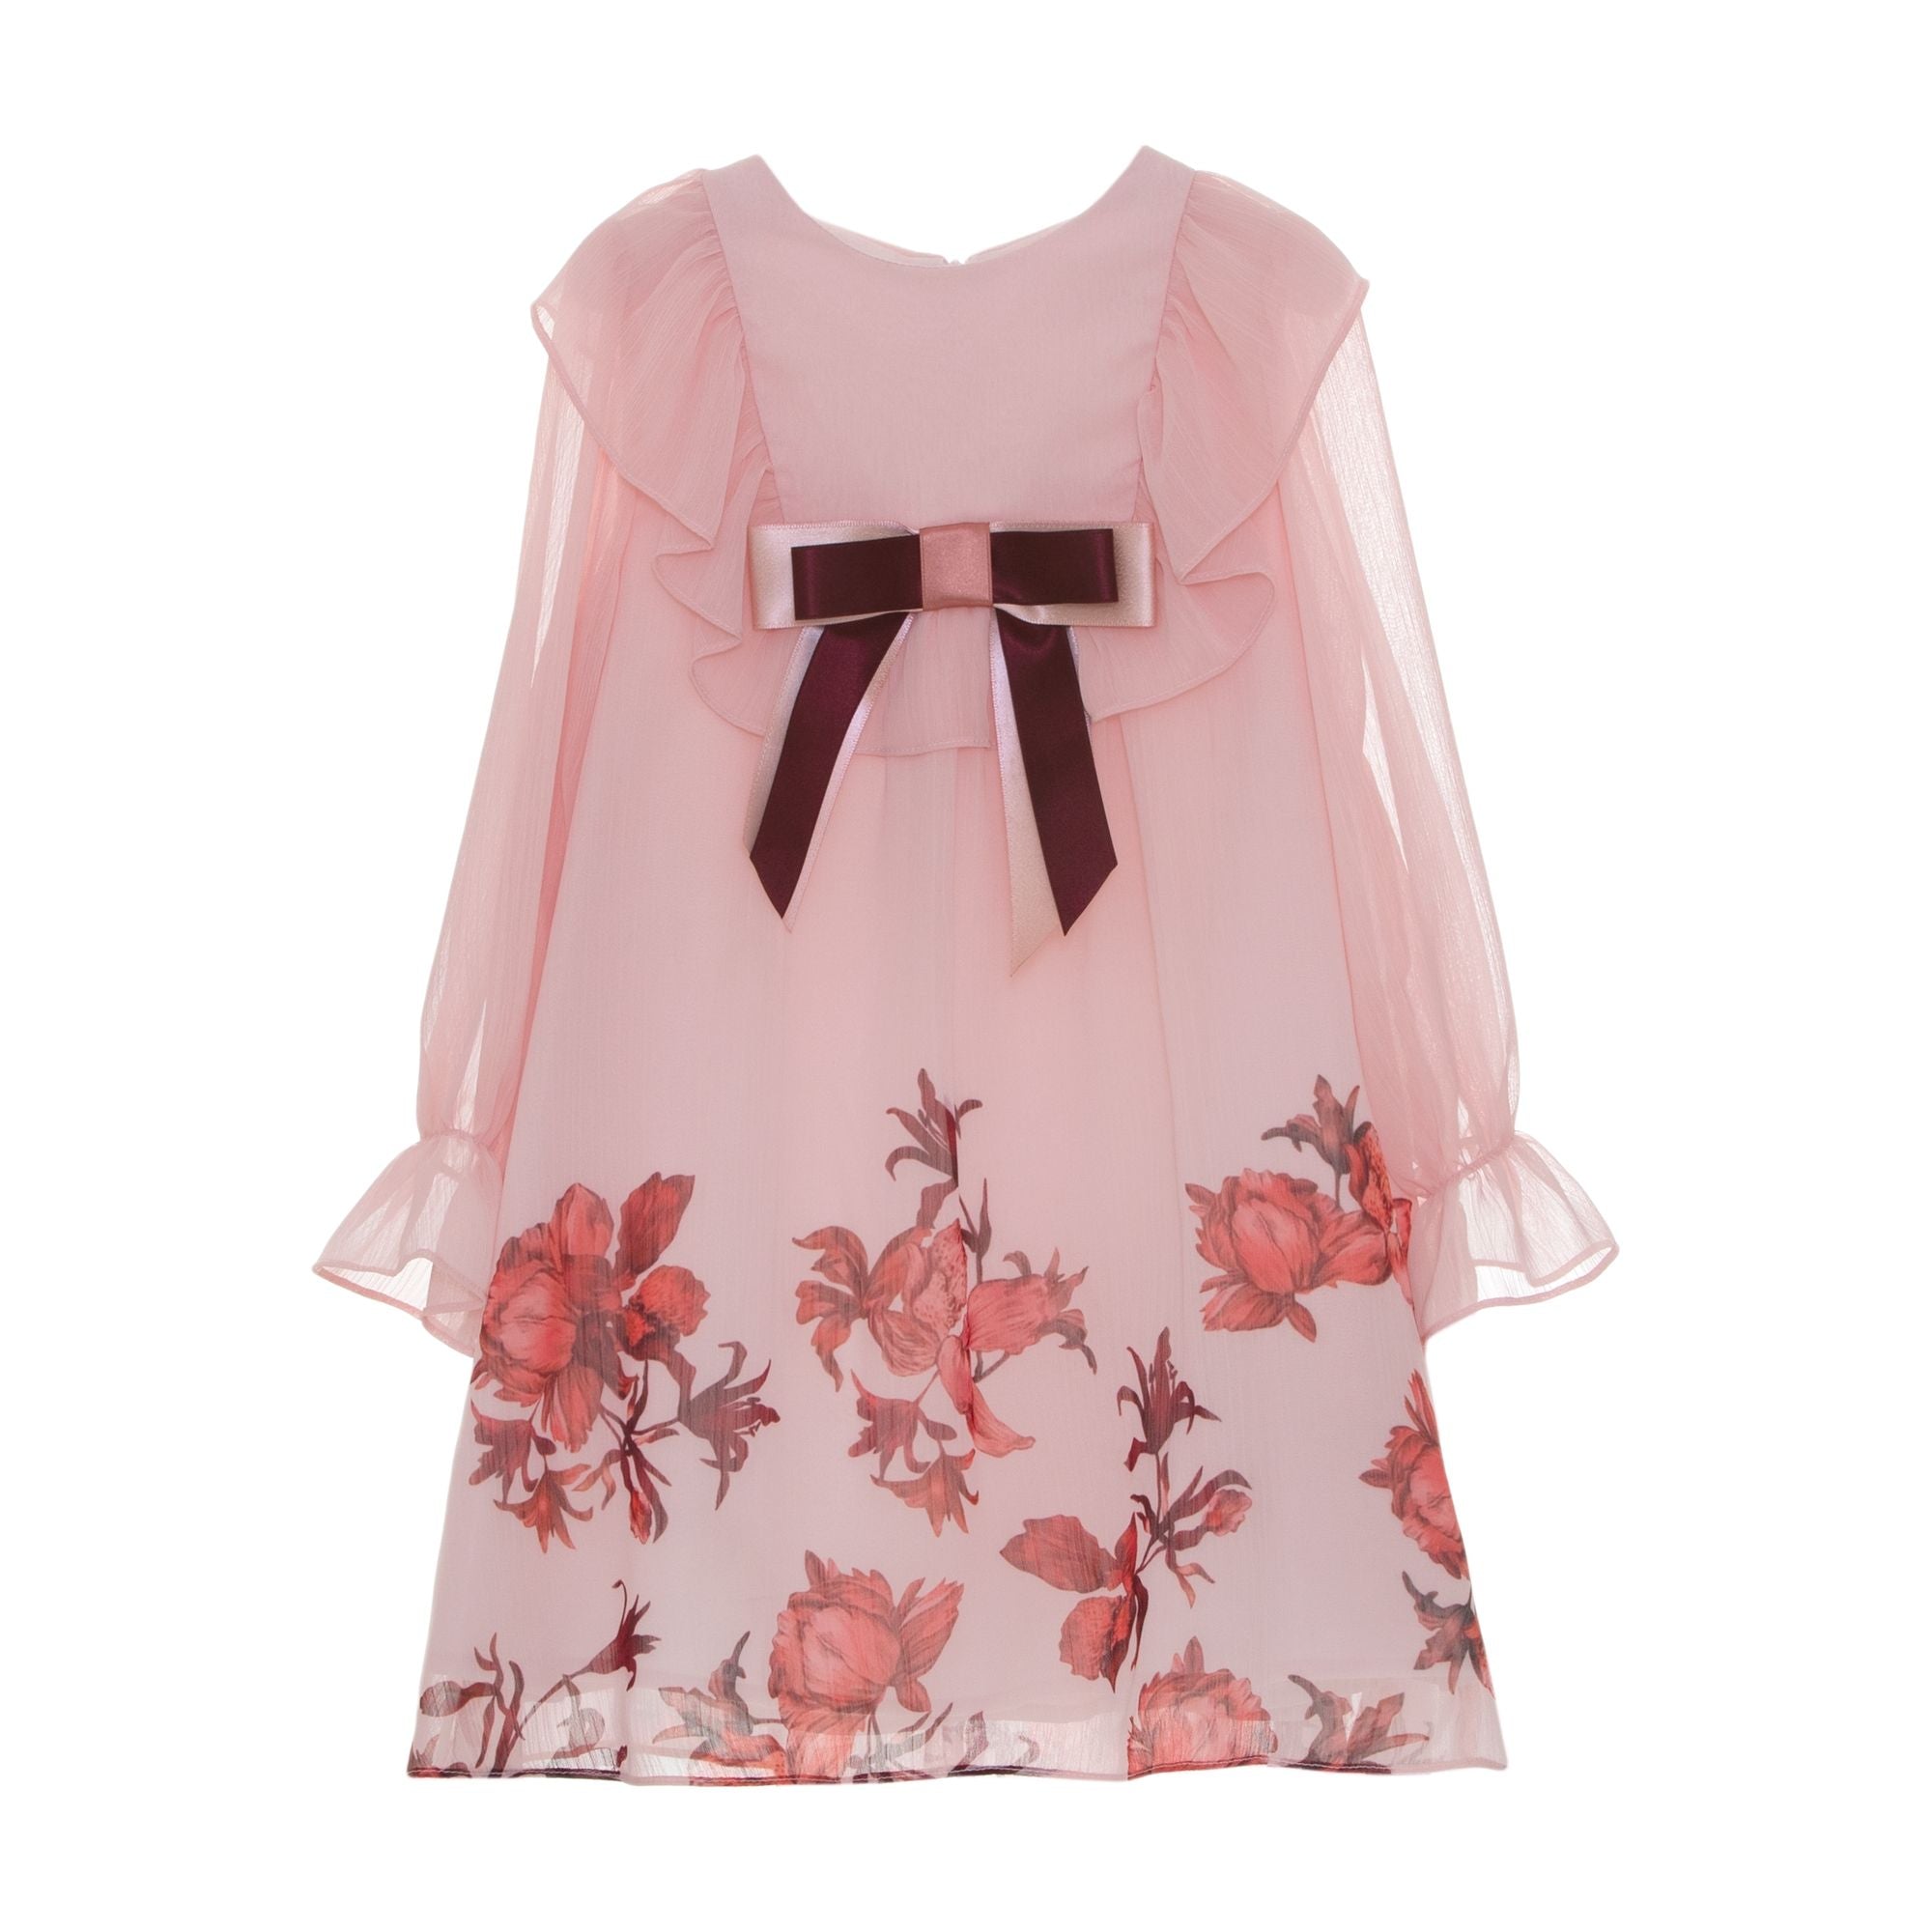 patachou pink floral chiffon girls dress